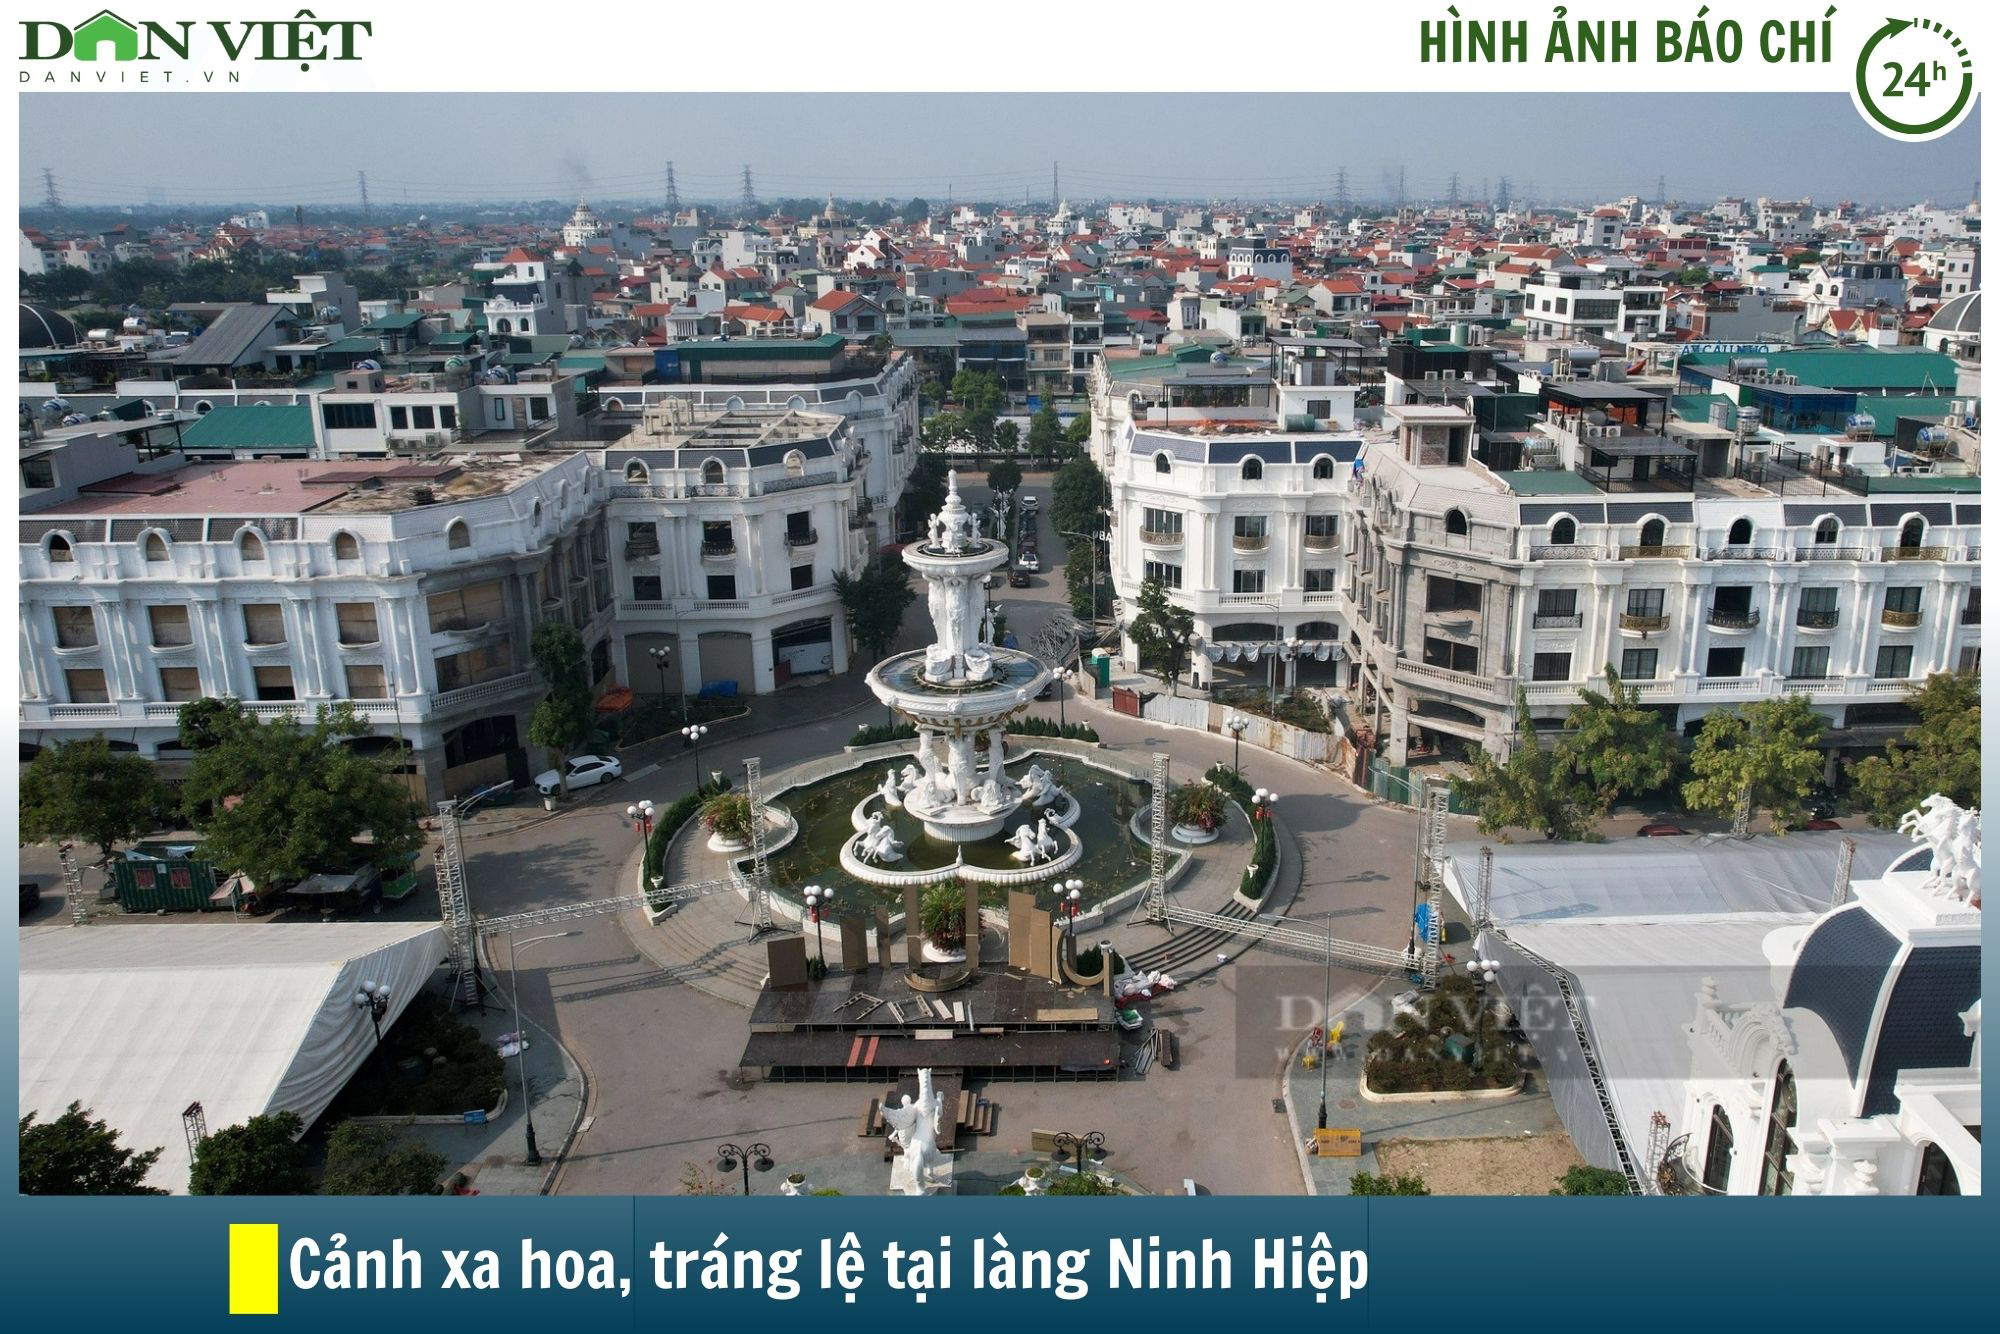 Hình ảnh báo chí 24h: Cảnh giàu có, nhà biệt thự mọc san sát ở làng vải Ninh Hiệp - Ảnh 1.